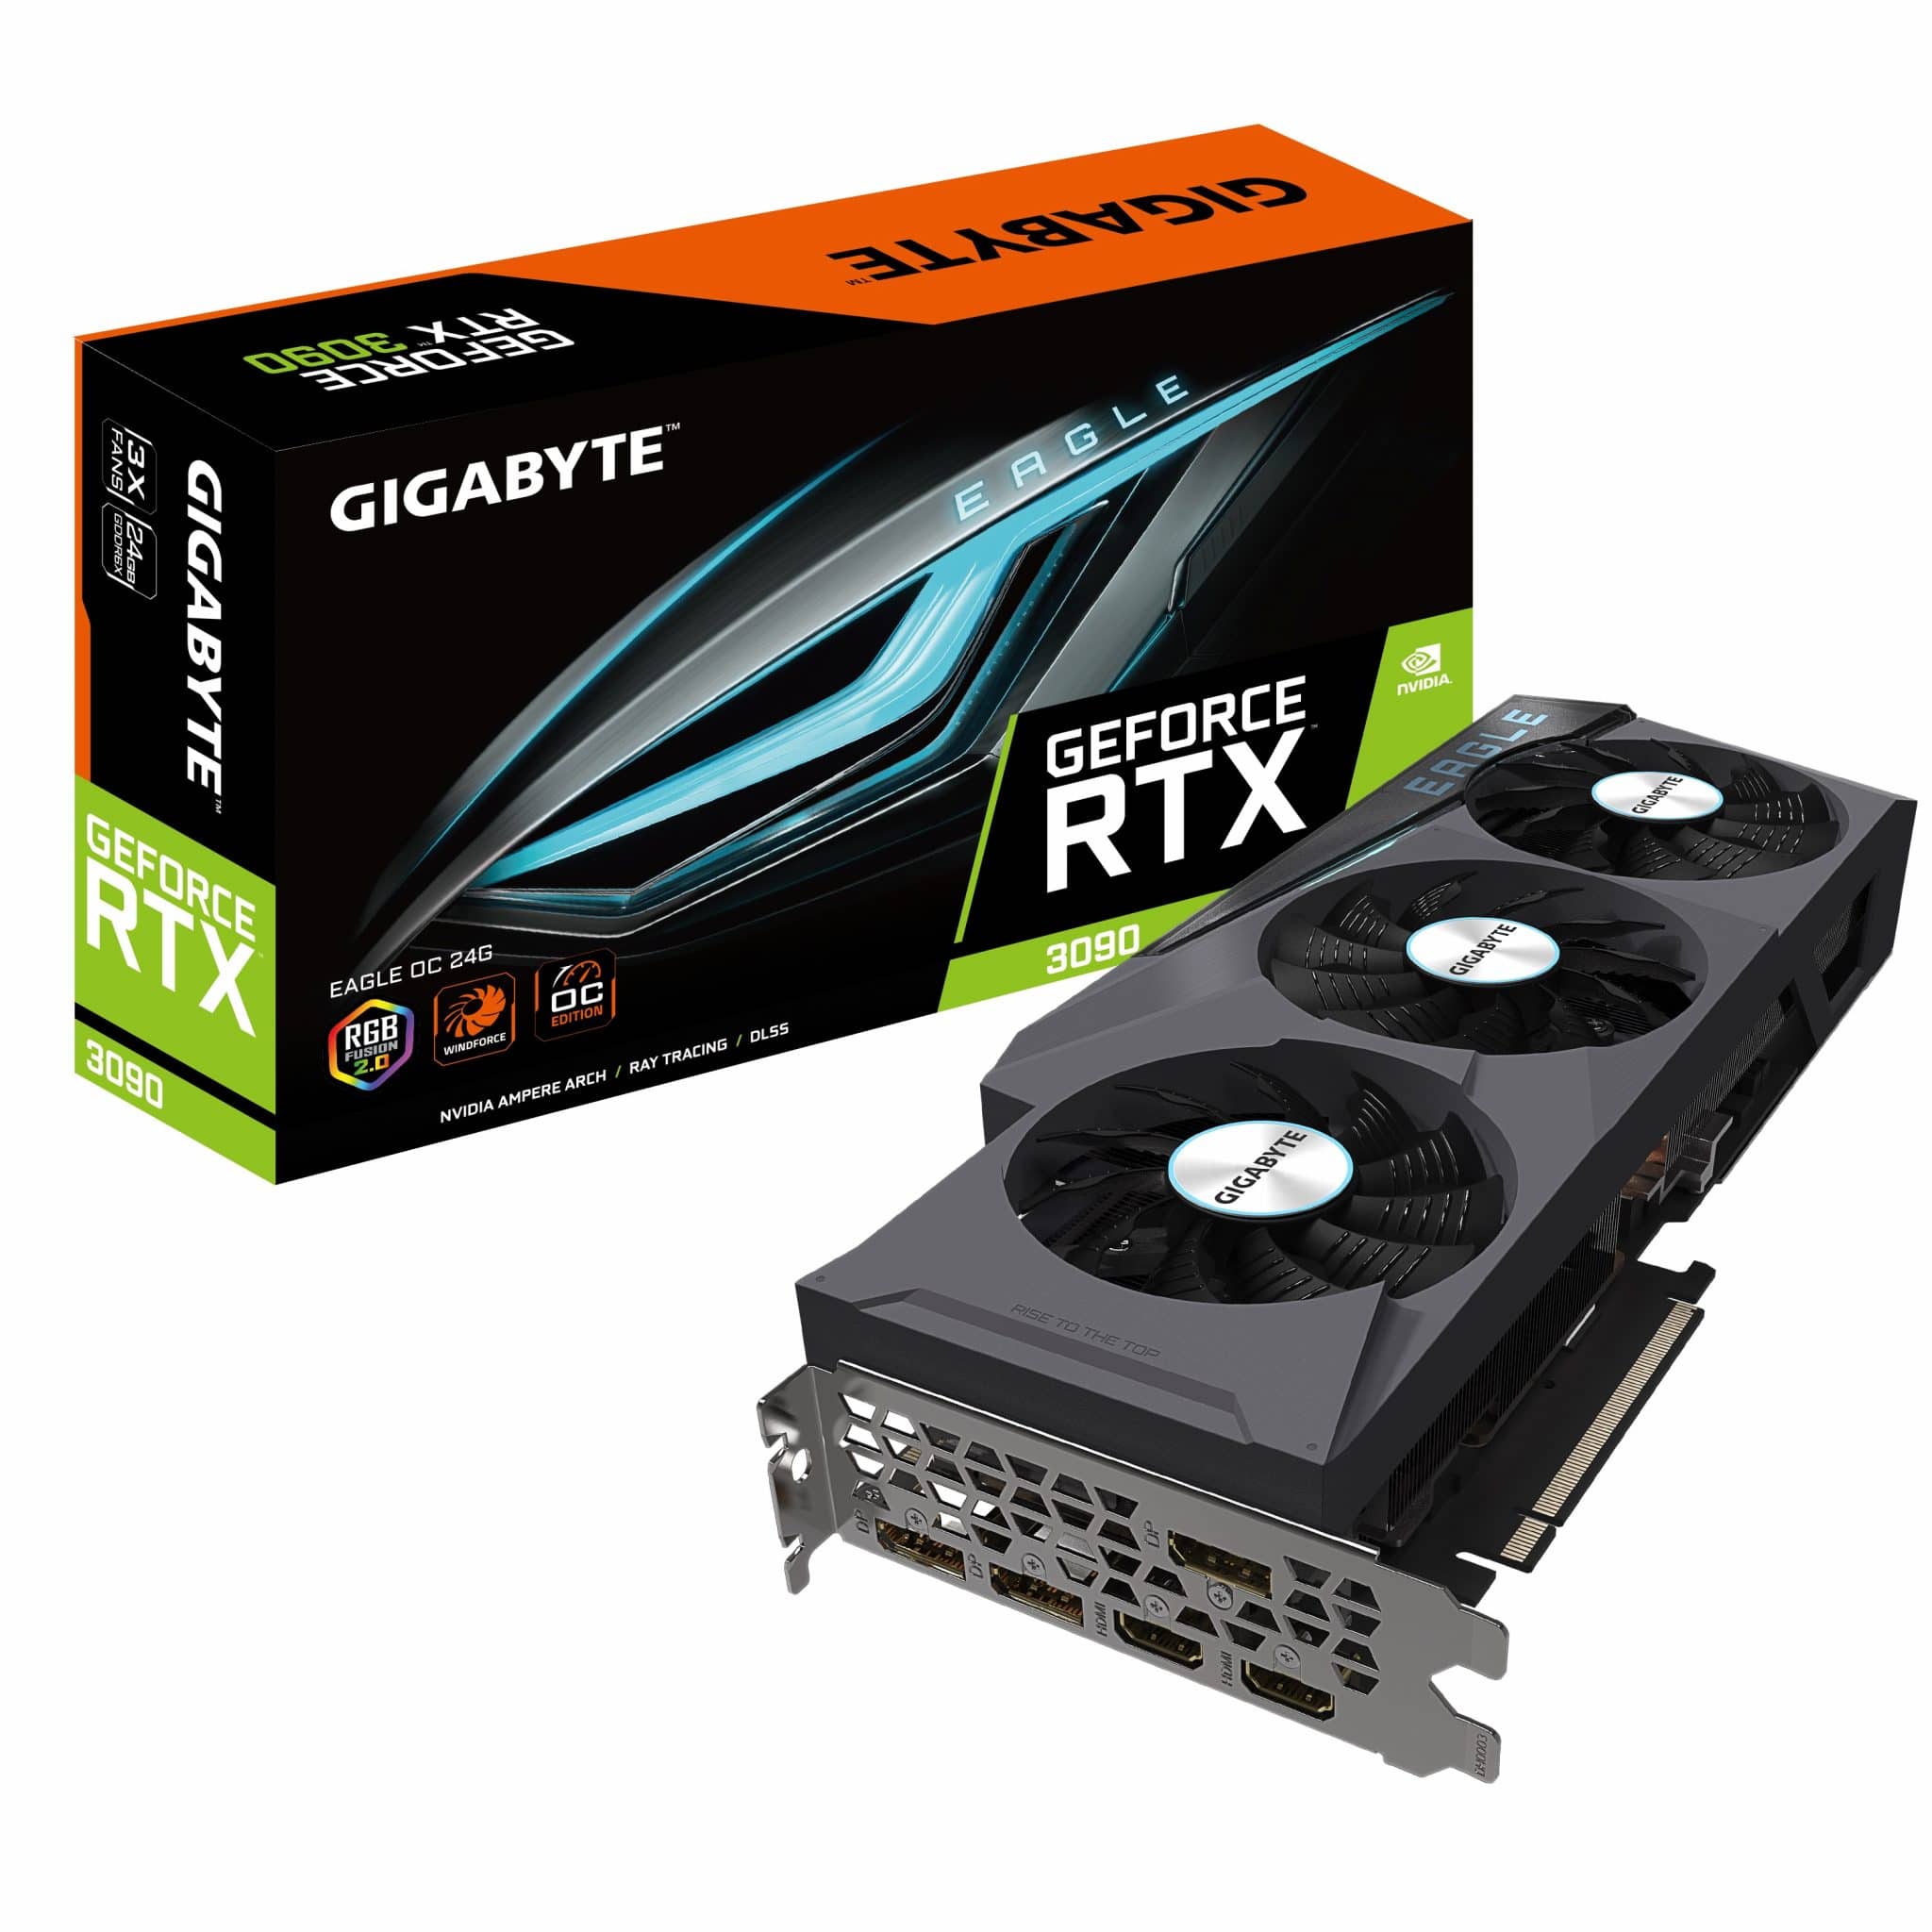 GIGABYTE trình làng dòng card GeForce RTX 30 series